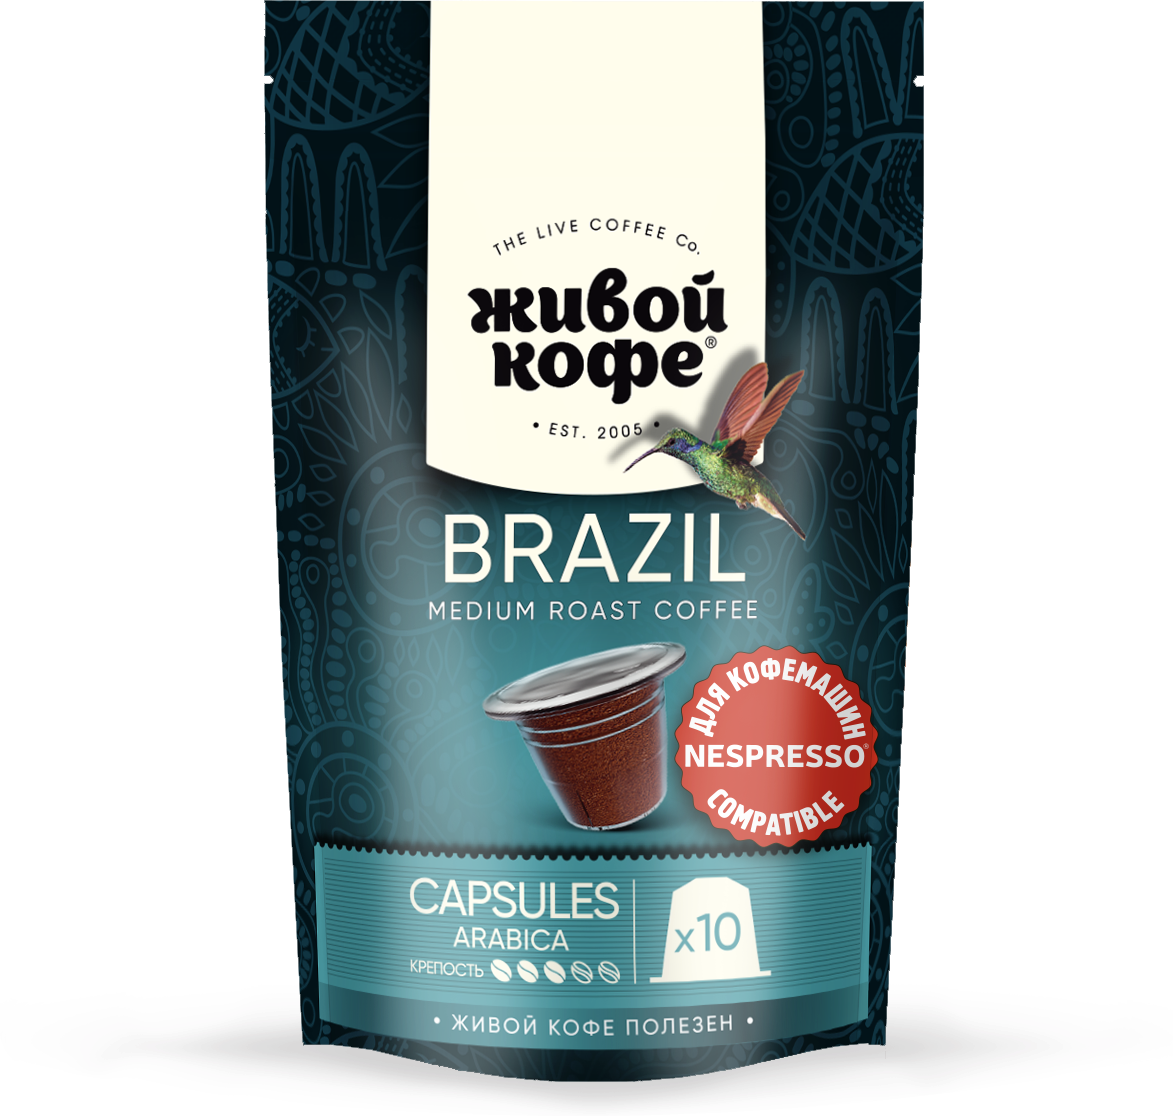 Капсулы Живой кофе Brazil Rio de Janeiro для кофемашины Nespresso (неспрессо) 50 гр (10 капсул по 5 гр)